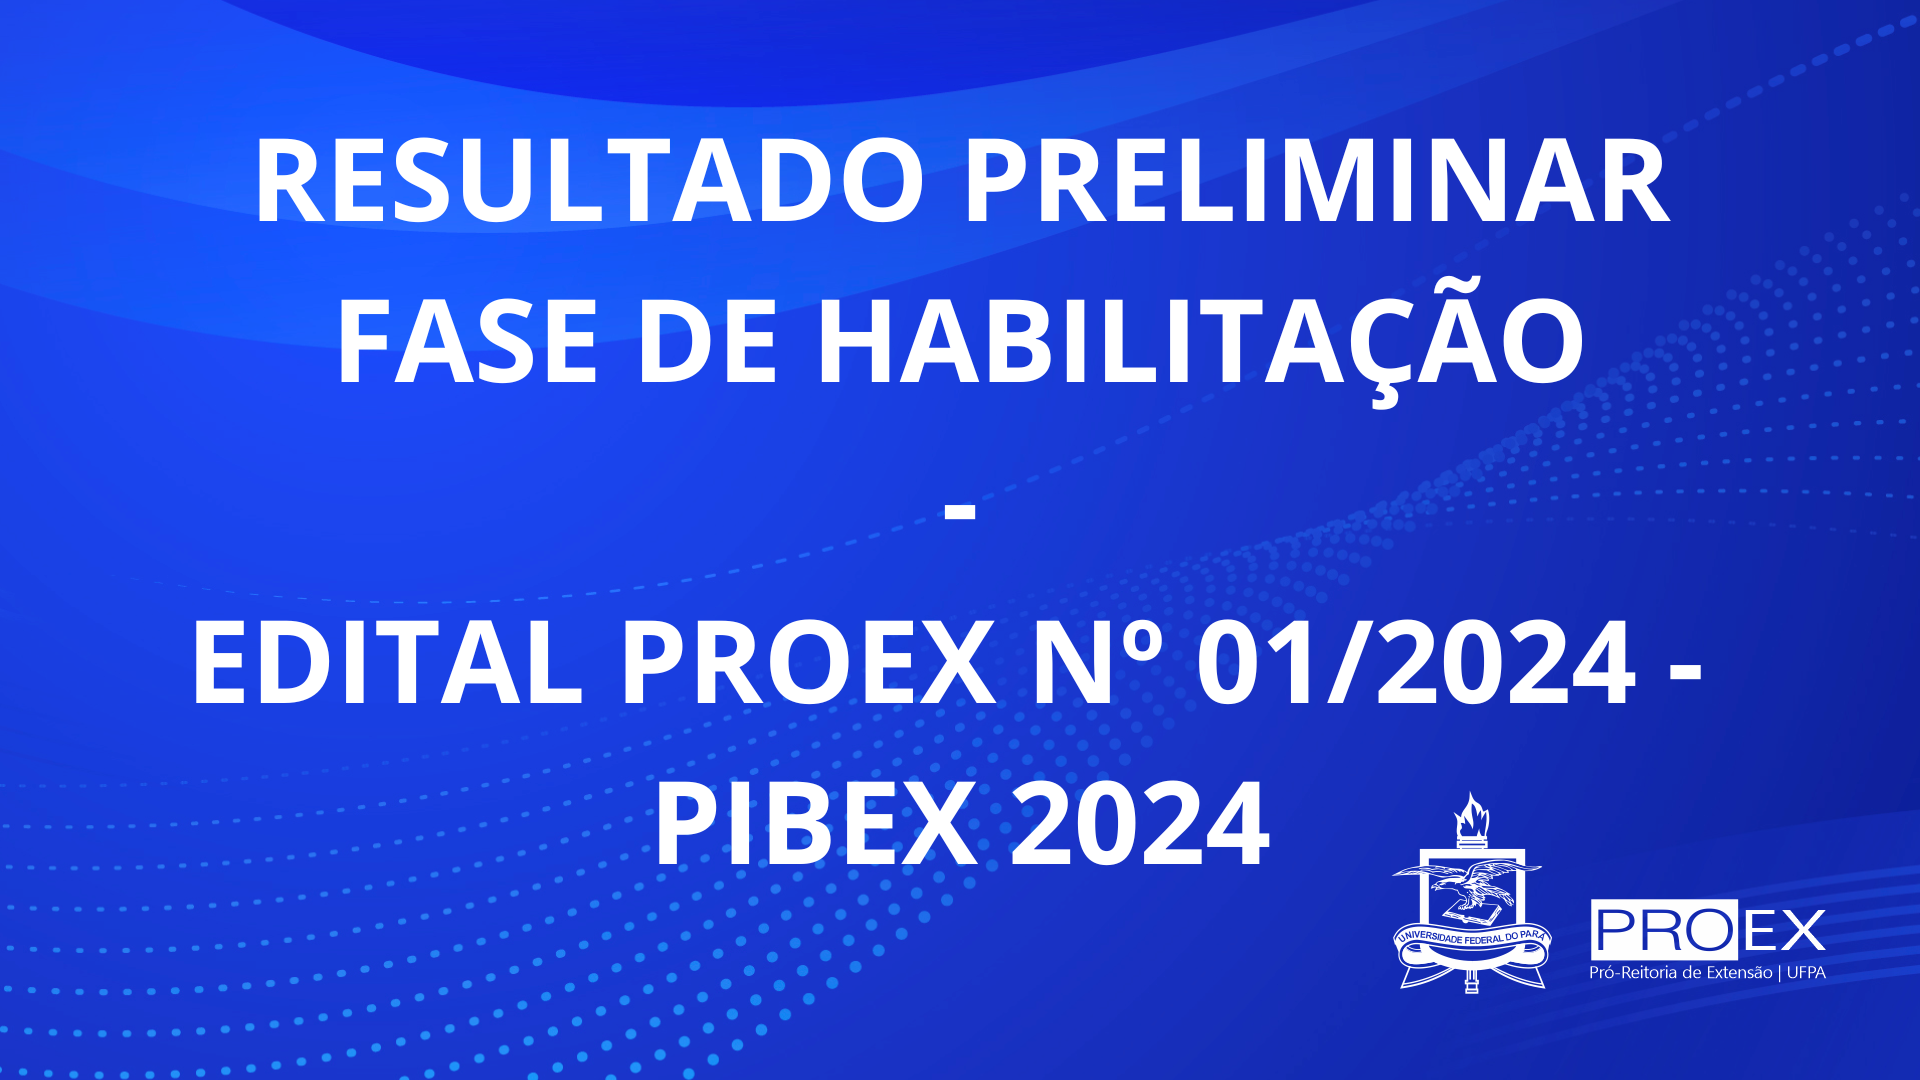 RESULTADO PRELIMINAR DA FASE DE HABILITAÇÃO- Edital PIBEX 01/2024 